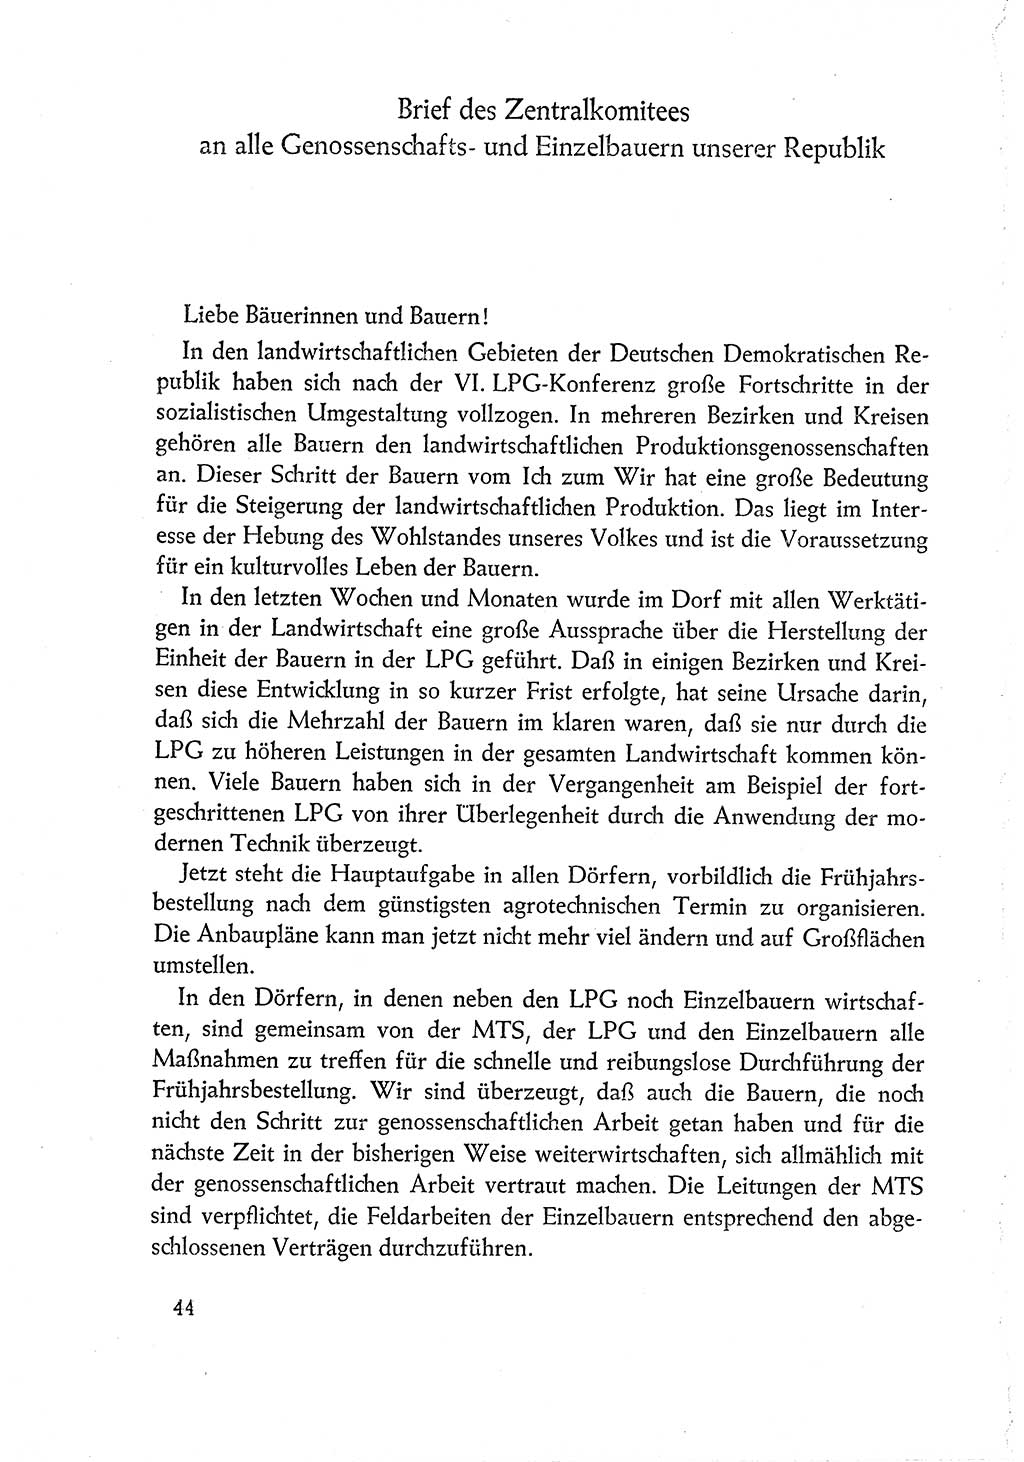 Dokumente der Sozialistischen Einheitspartei Deutschlands (SED) [Deutsche Demokratische Republik (DDR)] 1960-1961, Seite 44 (Dok. SED DDR 1960-1961, S. 44)